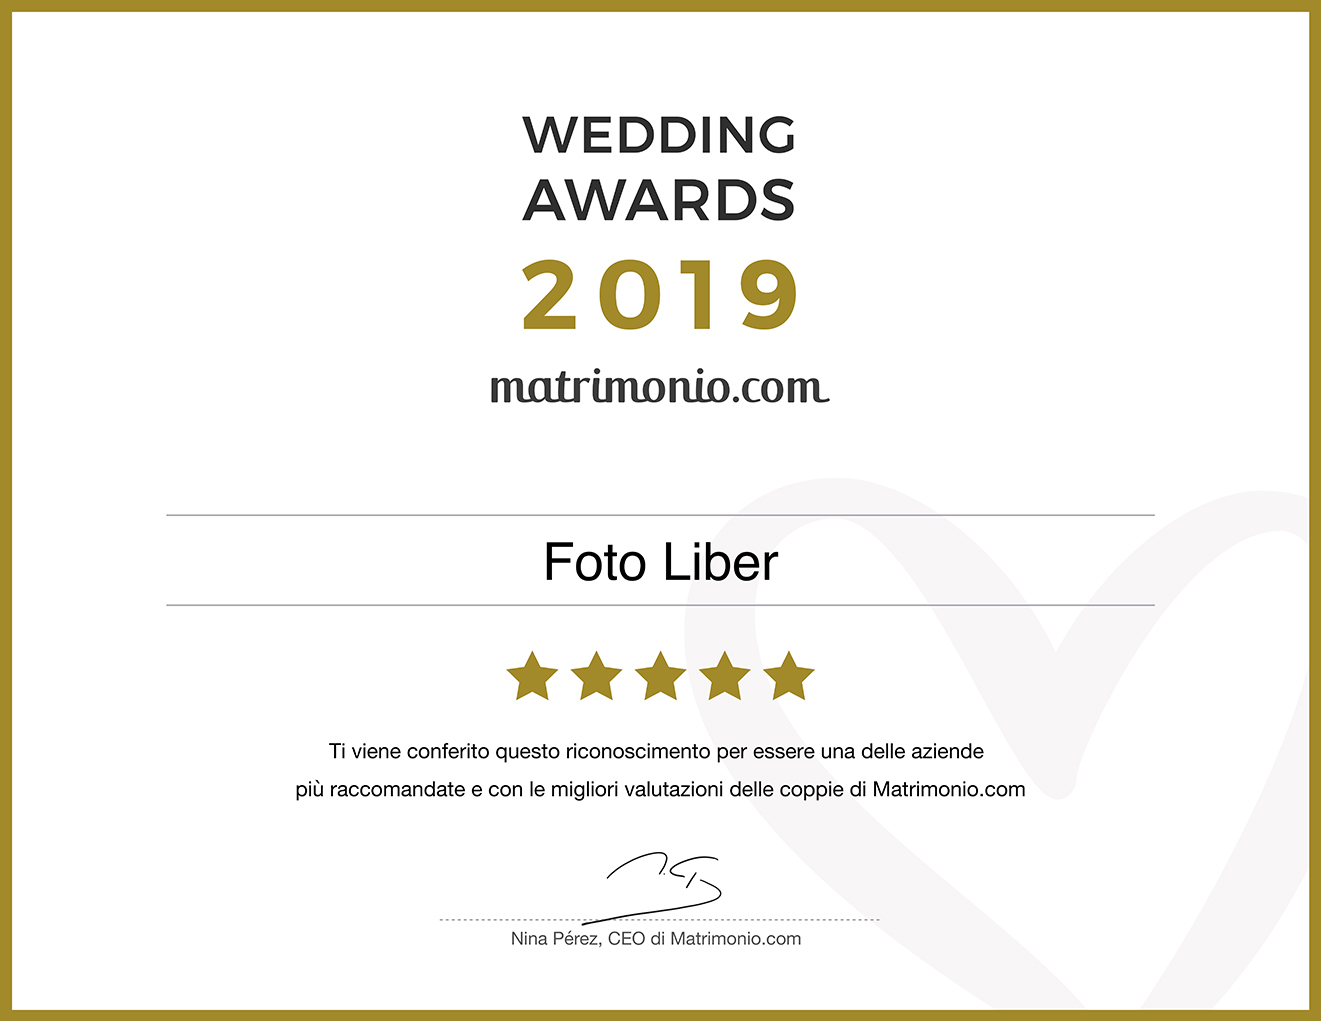 Foto Liber riceve il premio più prestigioso del settore nuziale: Wedding Awards 2019 nella categoria Fotografia e video